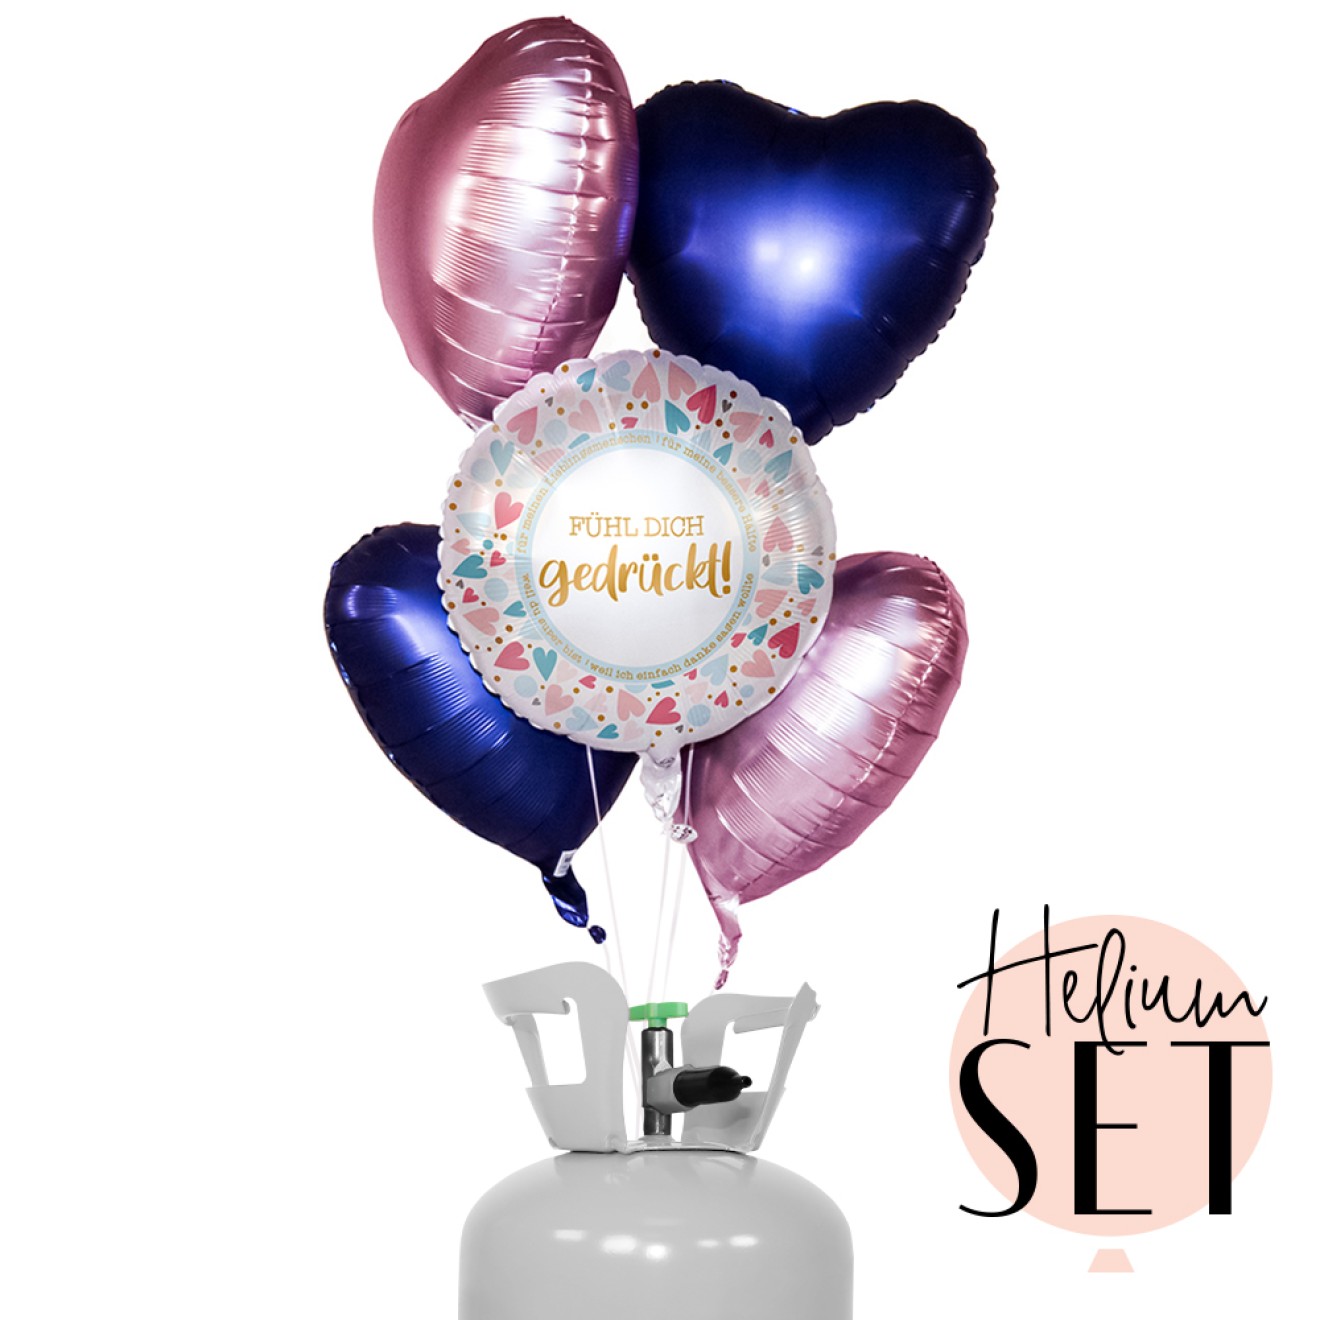 Helium Set - Fühl dich gedrückt